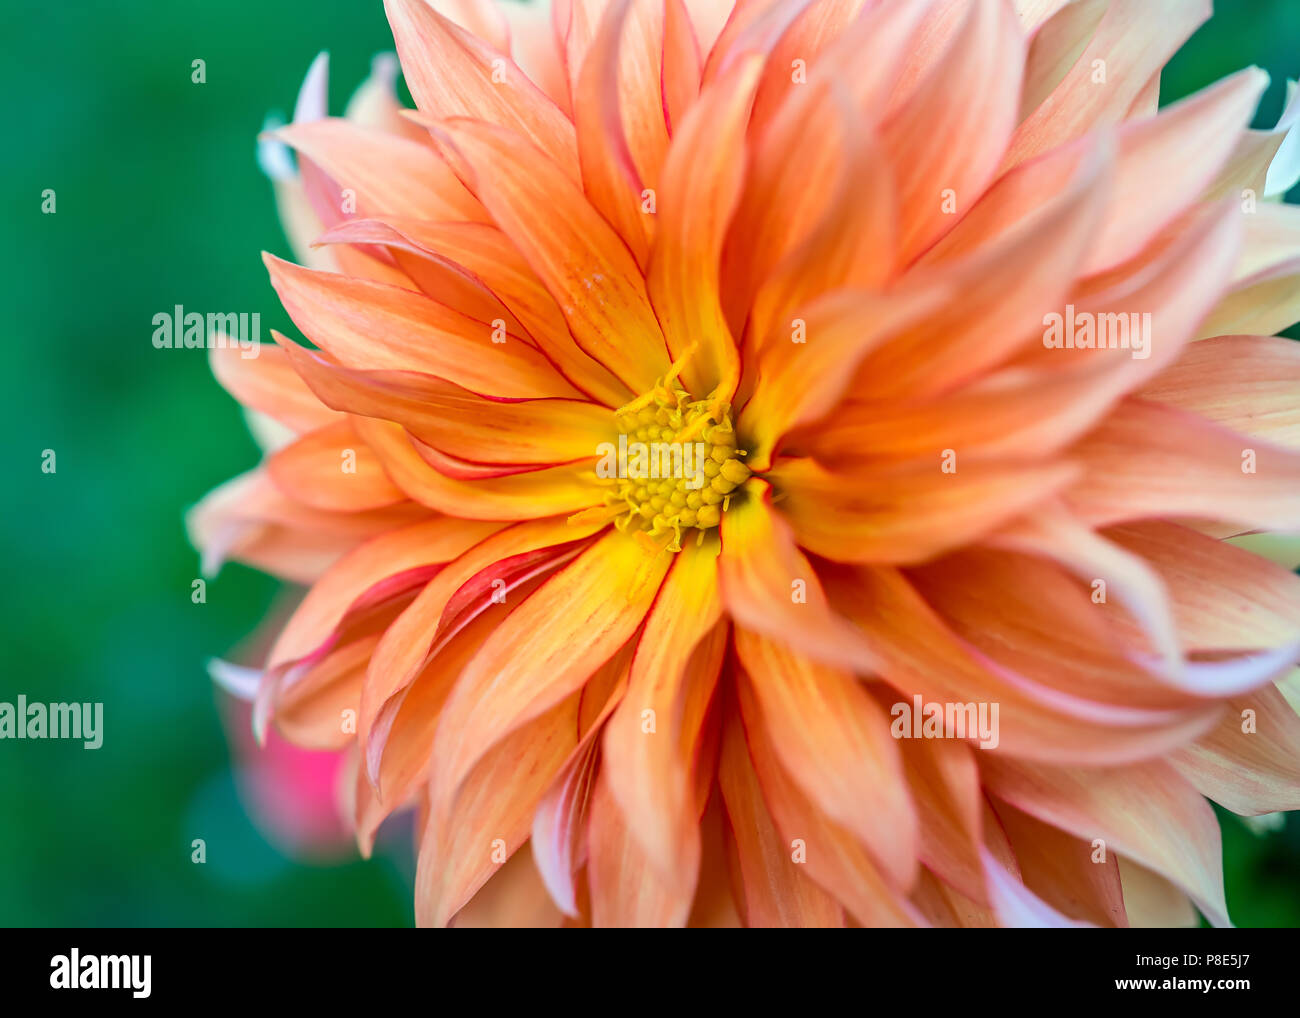 Close up of a pale orange dahlia blossom. Stock Photo